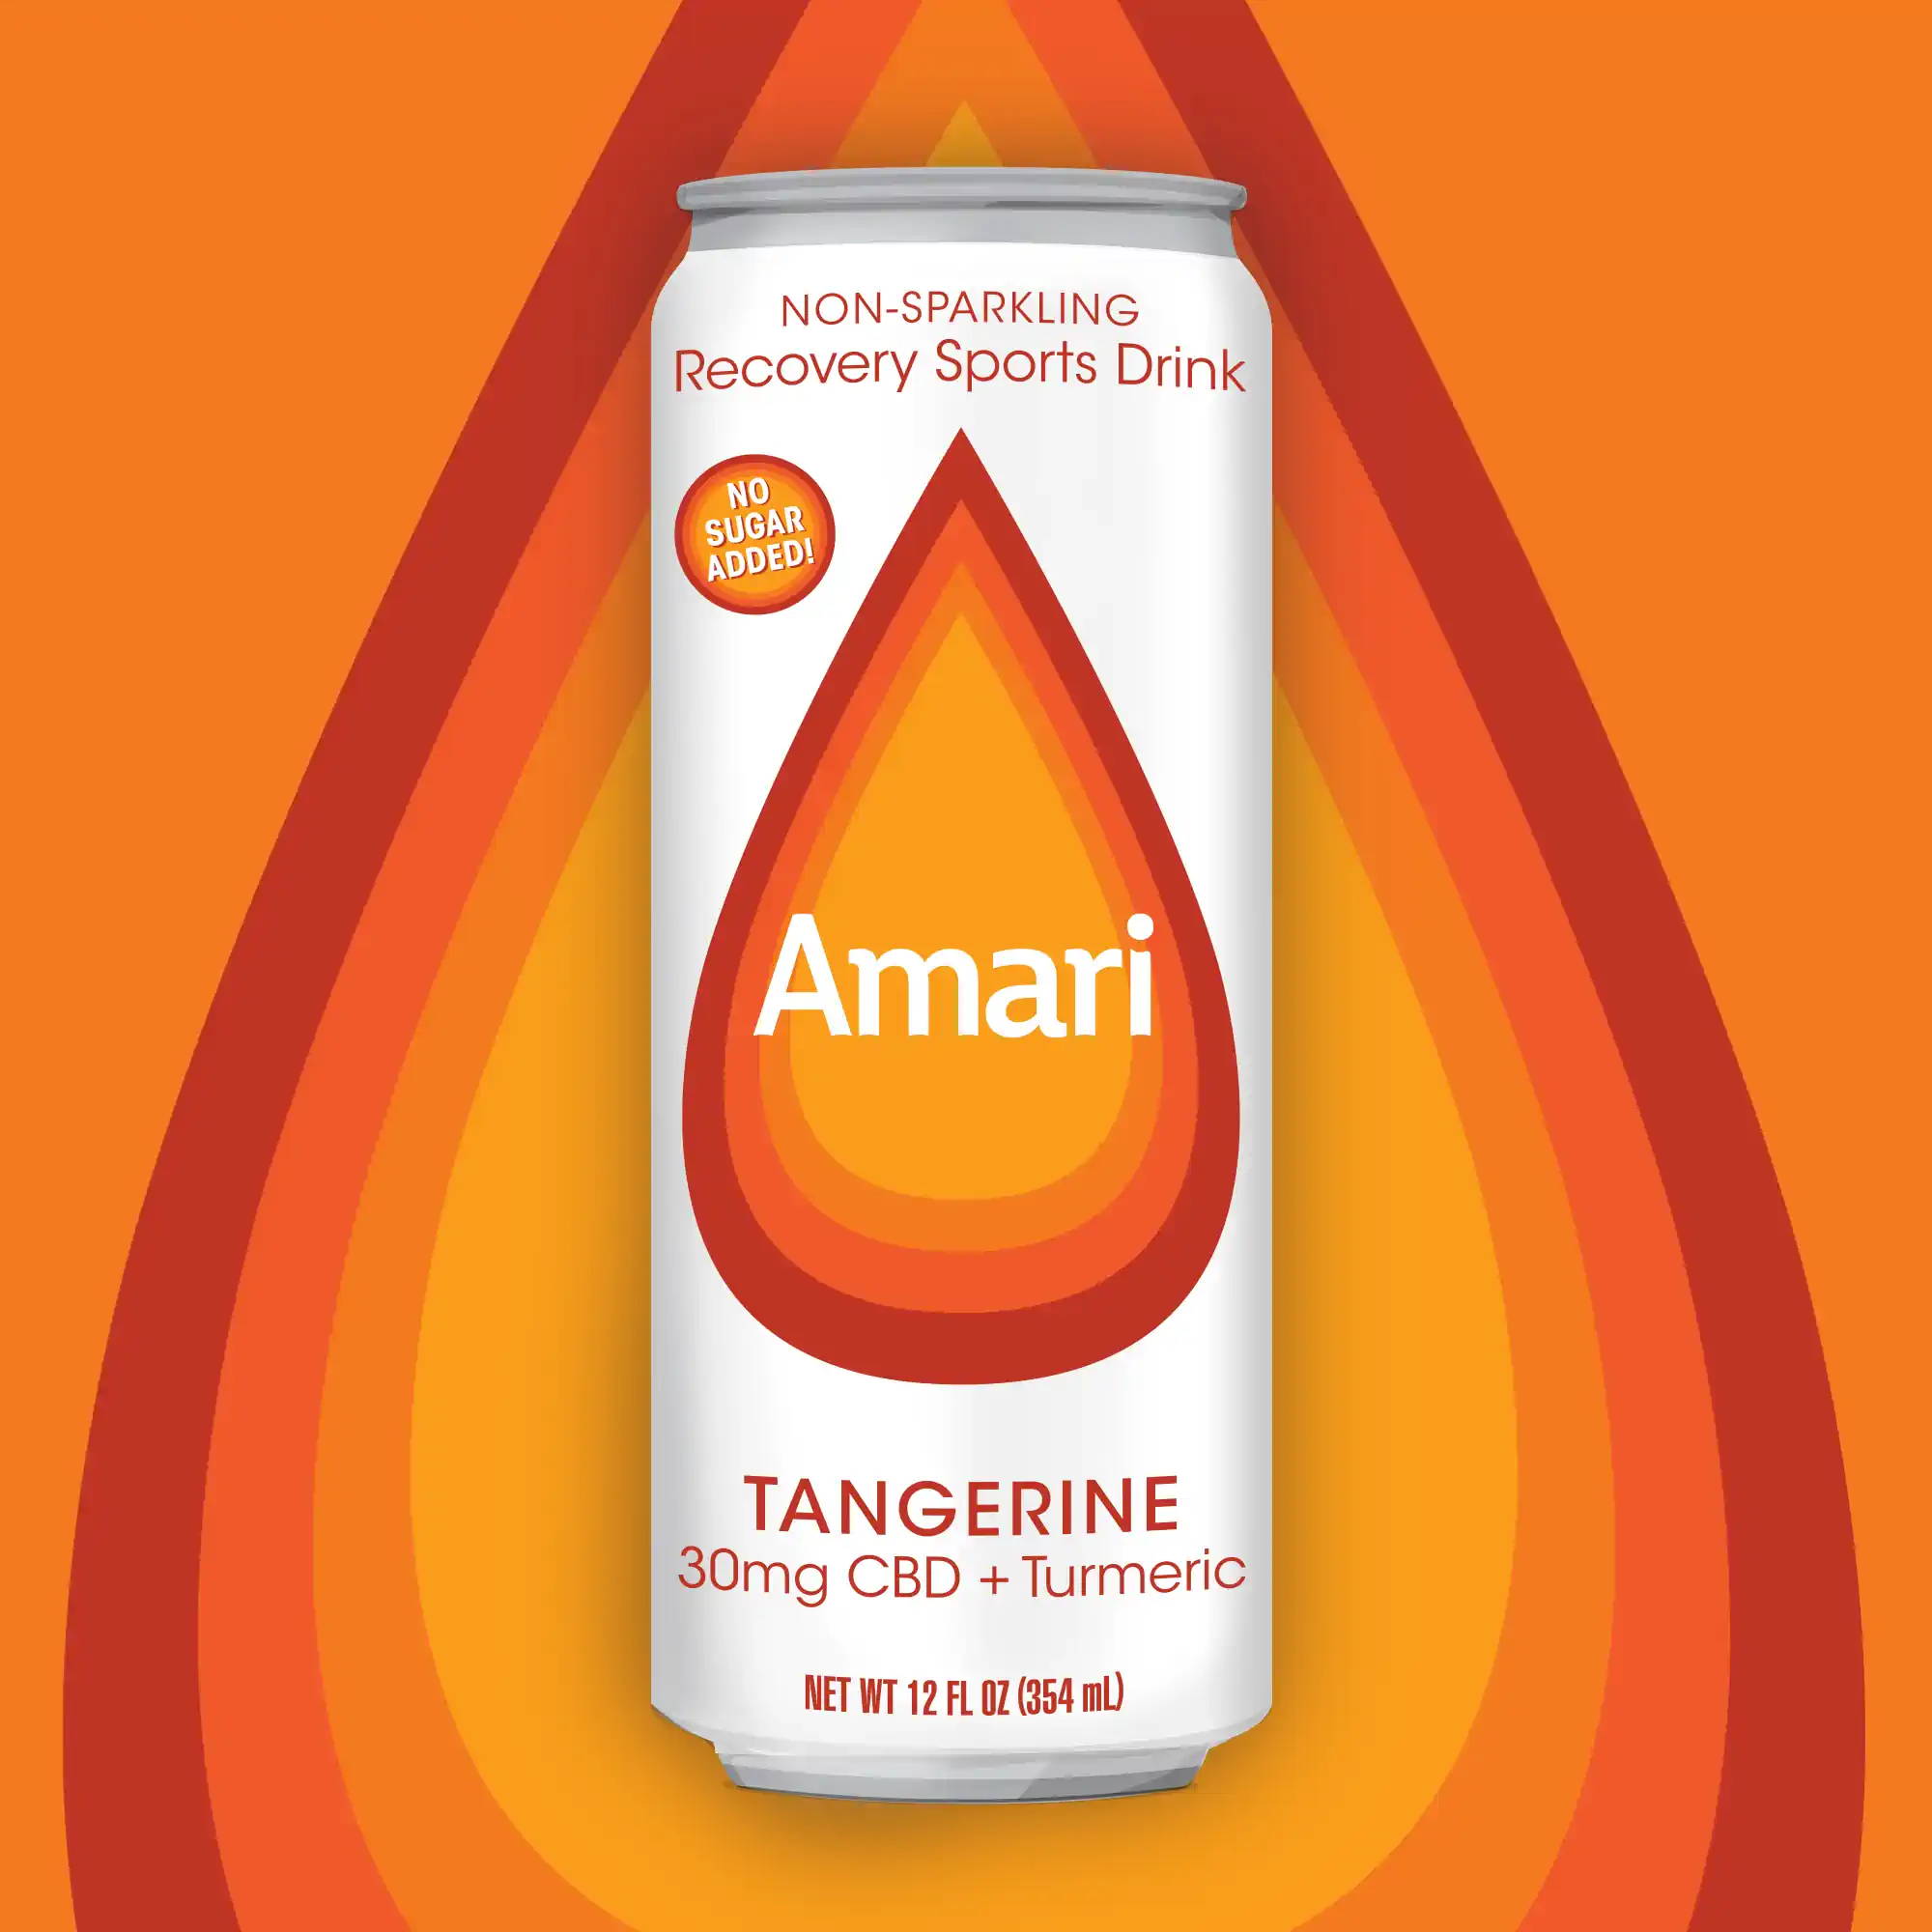 Can of Tangerine Amari